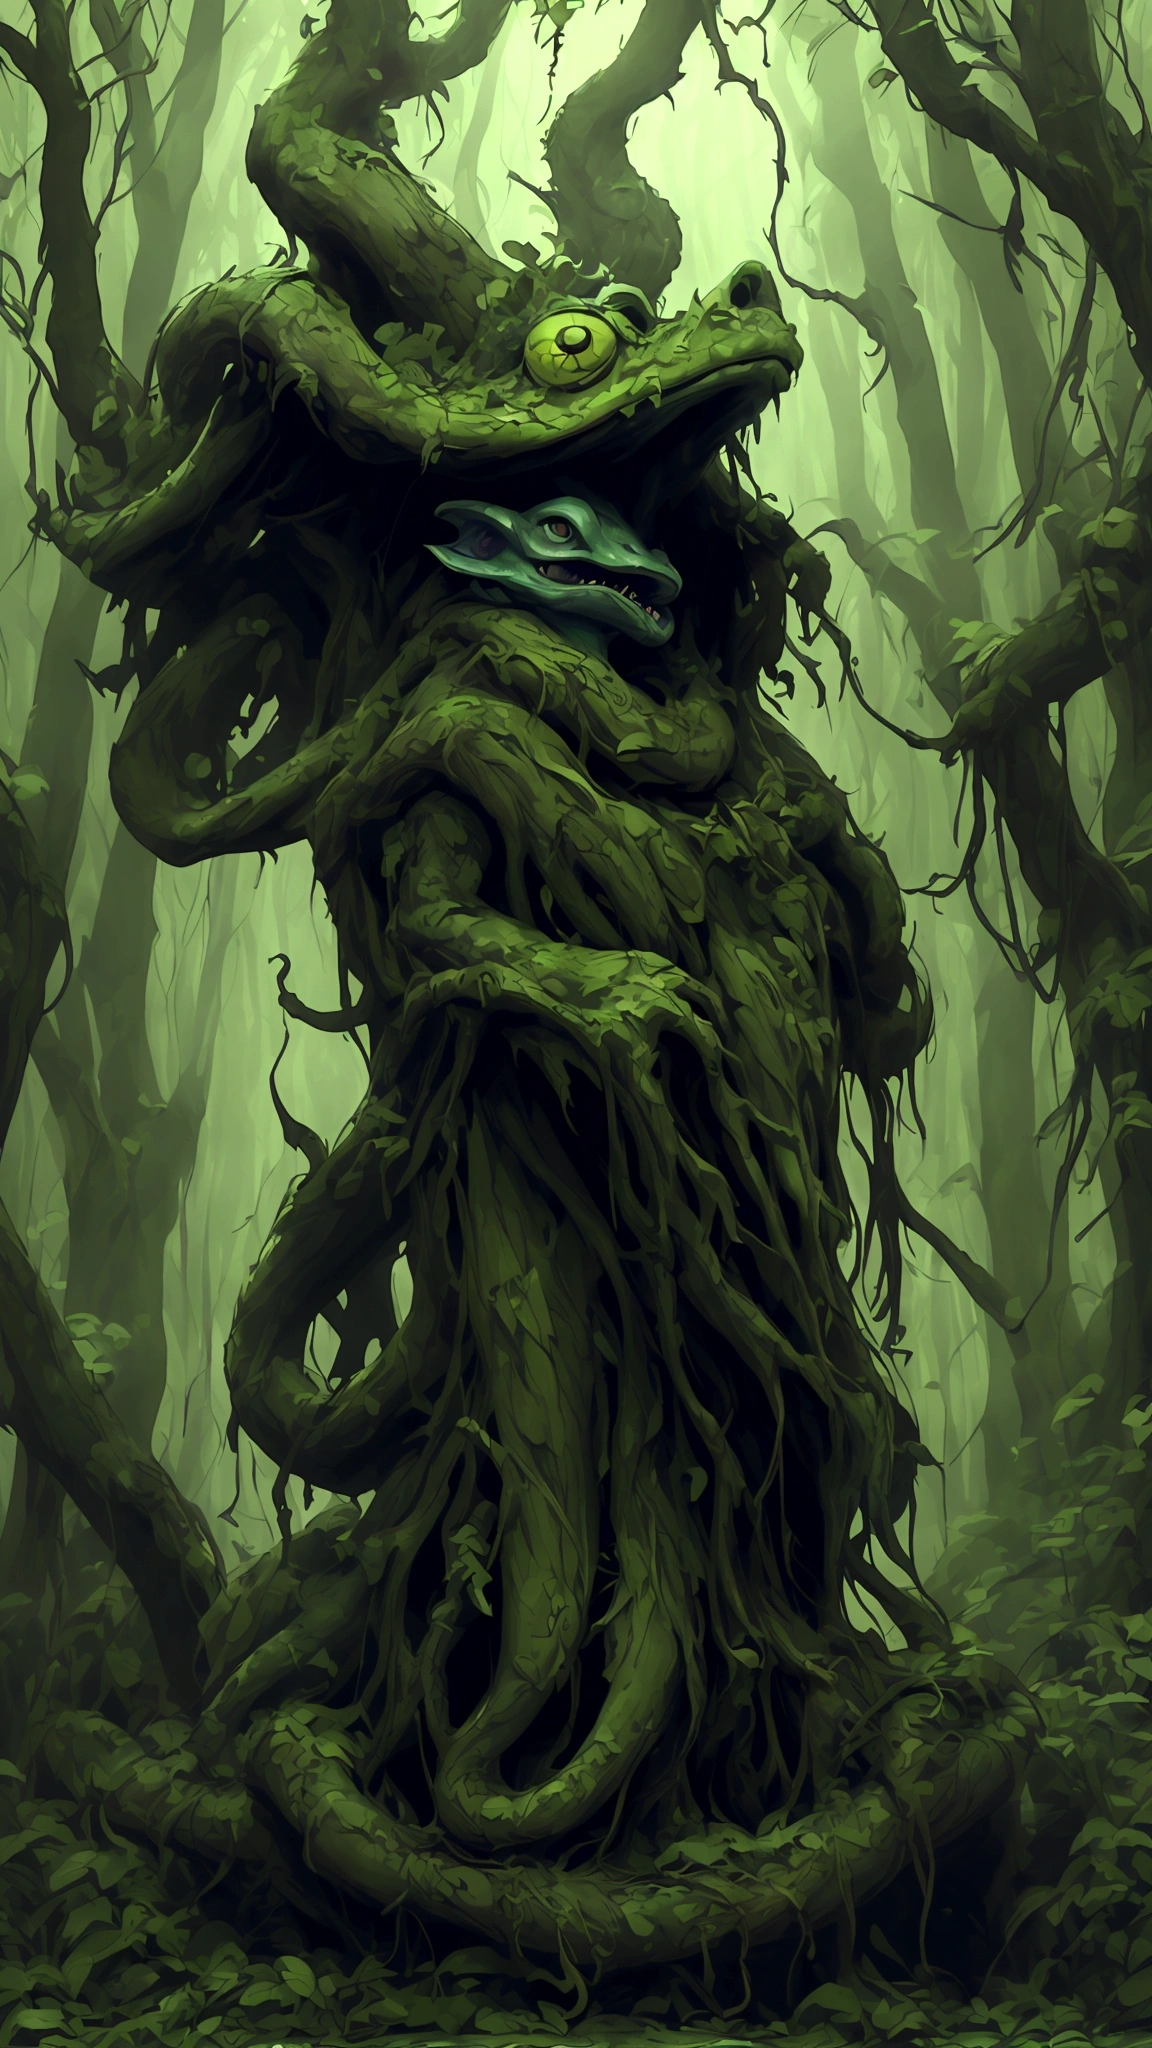 (Лучшее качество,Высокое разрешение:1.2),(реалистичный:1.37),ultra-Детальed,жуткая жаба,Огромные по размерам,ярко окрашенный,пробирается через древний лес,щупальца языка,толстая и скользкая кожа,темный,зловещая атмосфера,мрачные тени,туманный туман,корявые деревья,Скрученные ветки,покрытые мхом скалы,пятнистый солнечный свет,неземное сияние,жуткая атмосфера,густой подлесок,хруст листьев под ногами,преследующее присутствие,тревожная тишина,далекий шепот,существо, похожее на Ктулху,Мифический мир,загадочная аура, Сентай Рейнджер, HDR, 8К, абсурд, Синестилла 800, острый фокус, добавлять_Деталь:3 (соло женщина) аниме, широкоформатный, широкоэкранный, сосредоточиться на предмете
